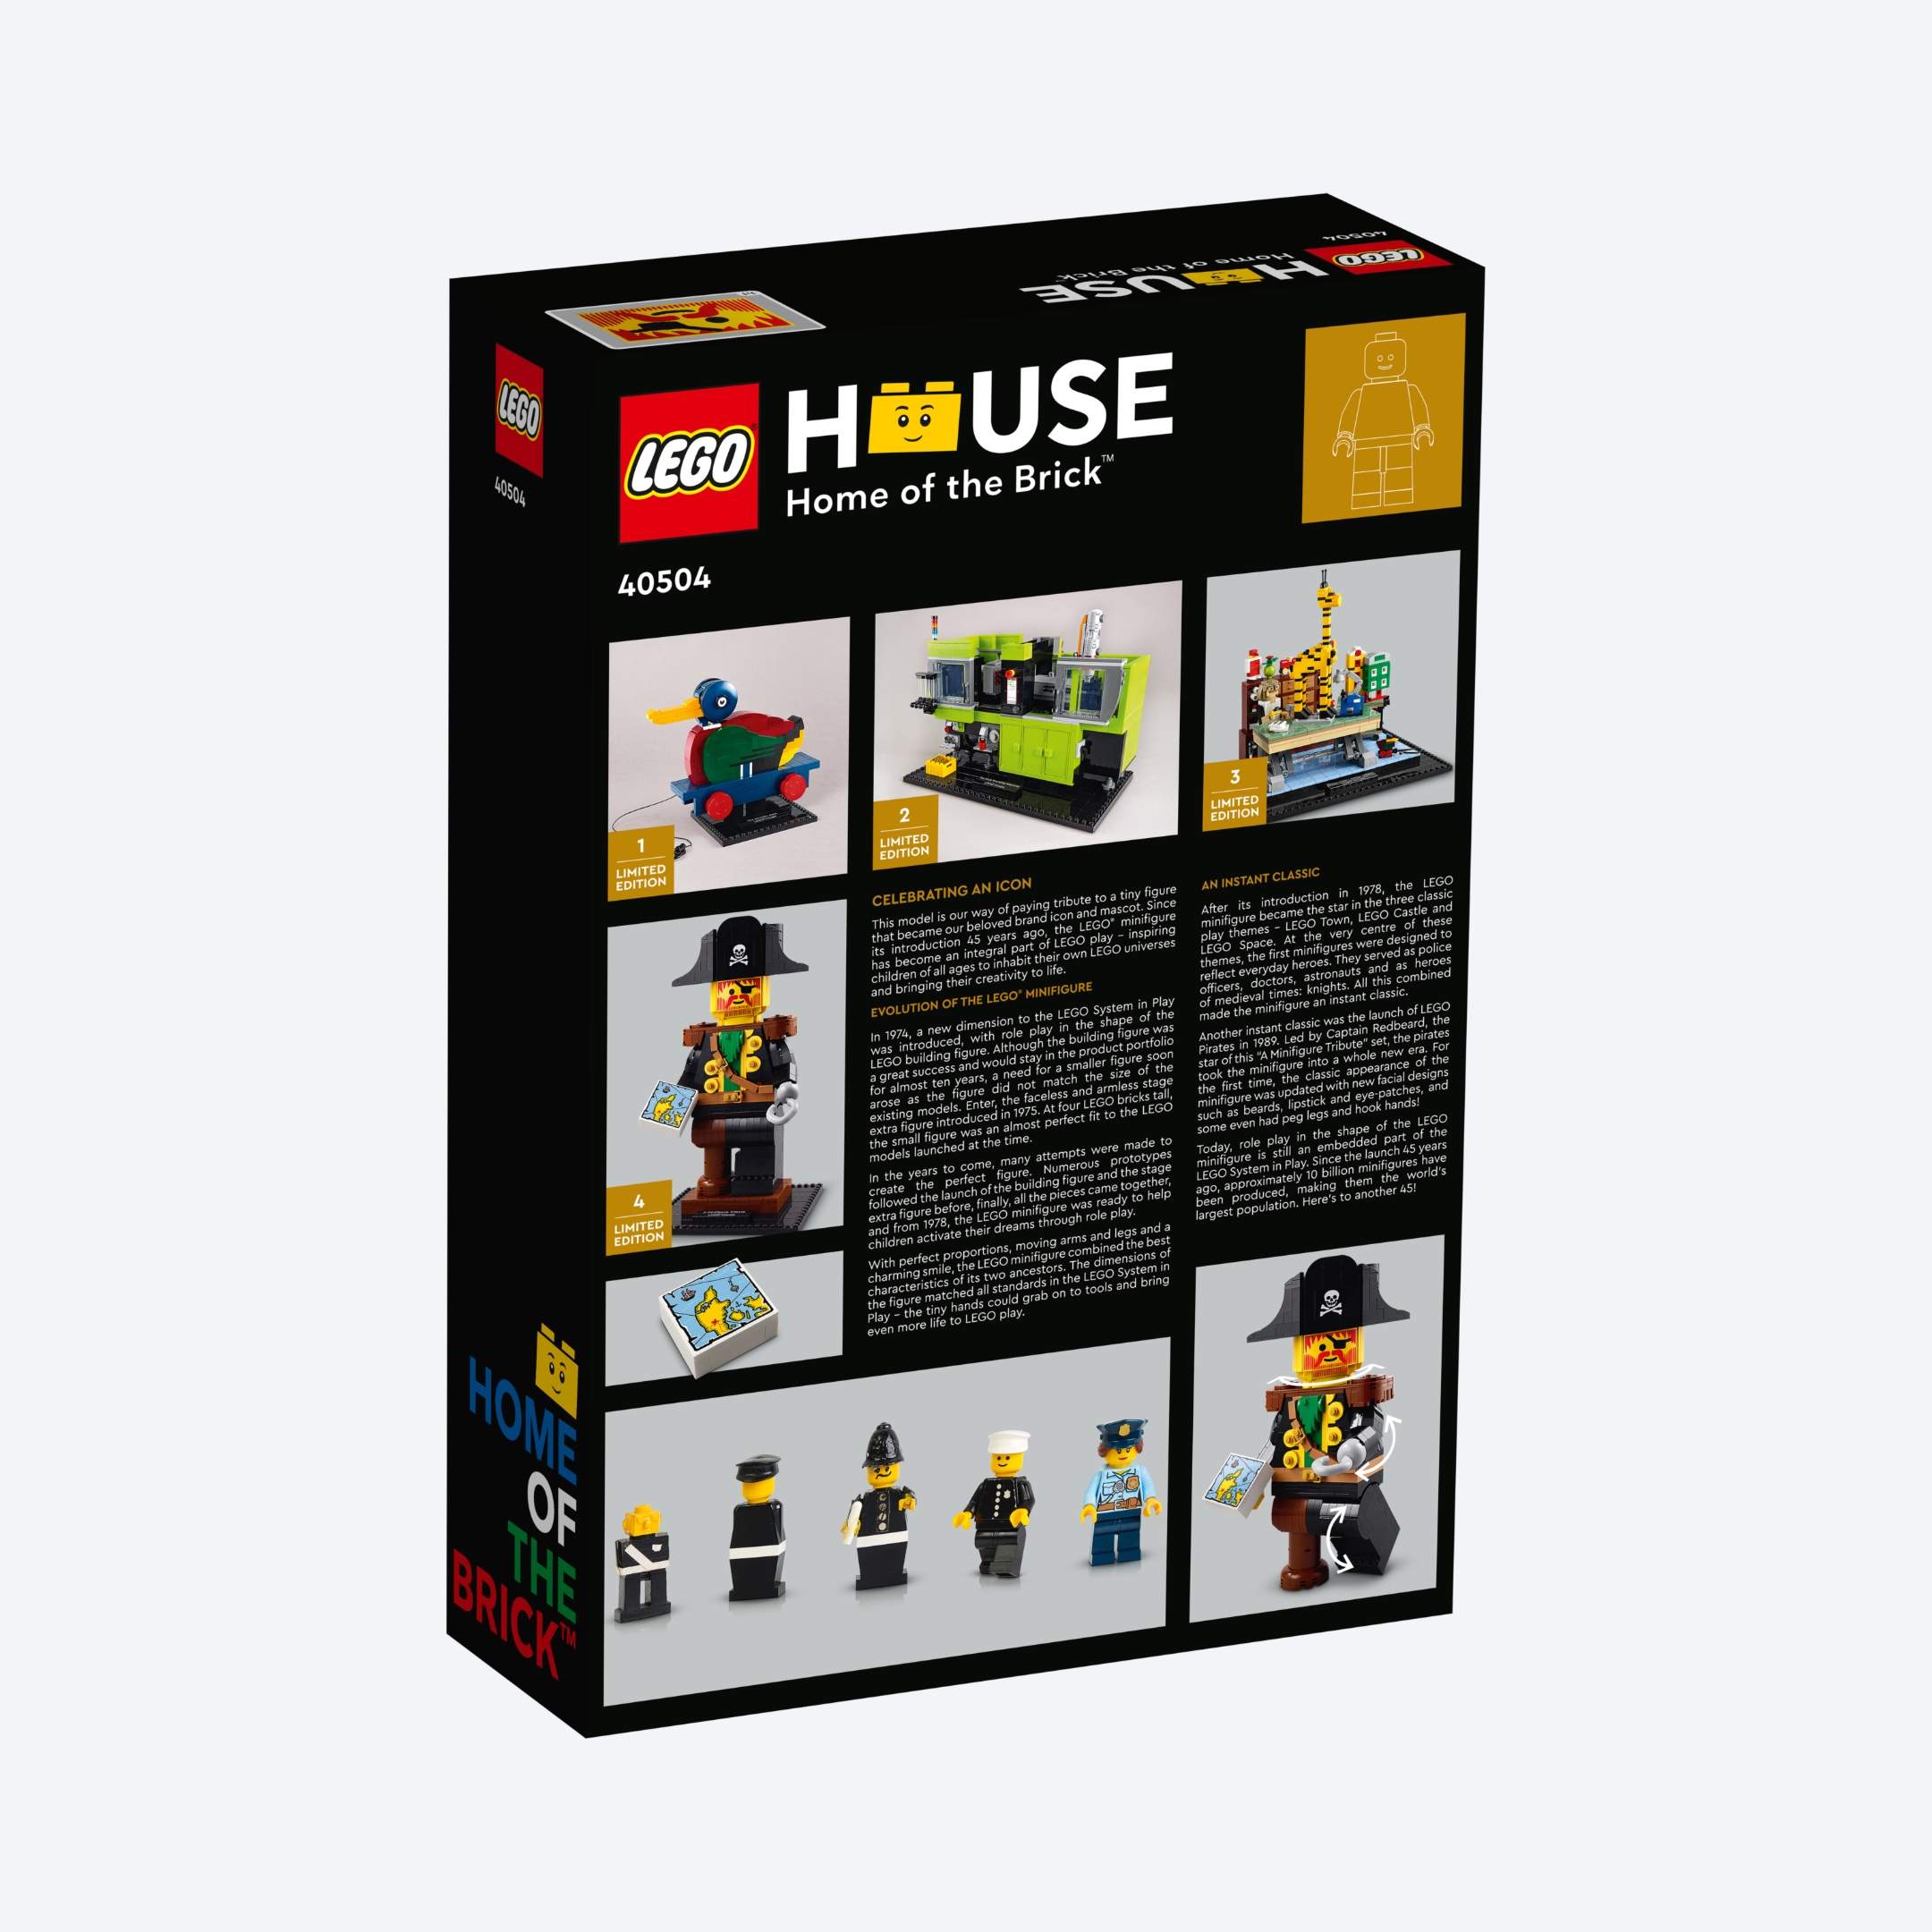 LEGO 40504 Box Back